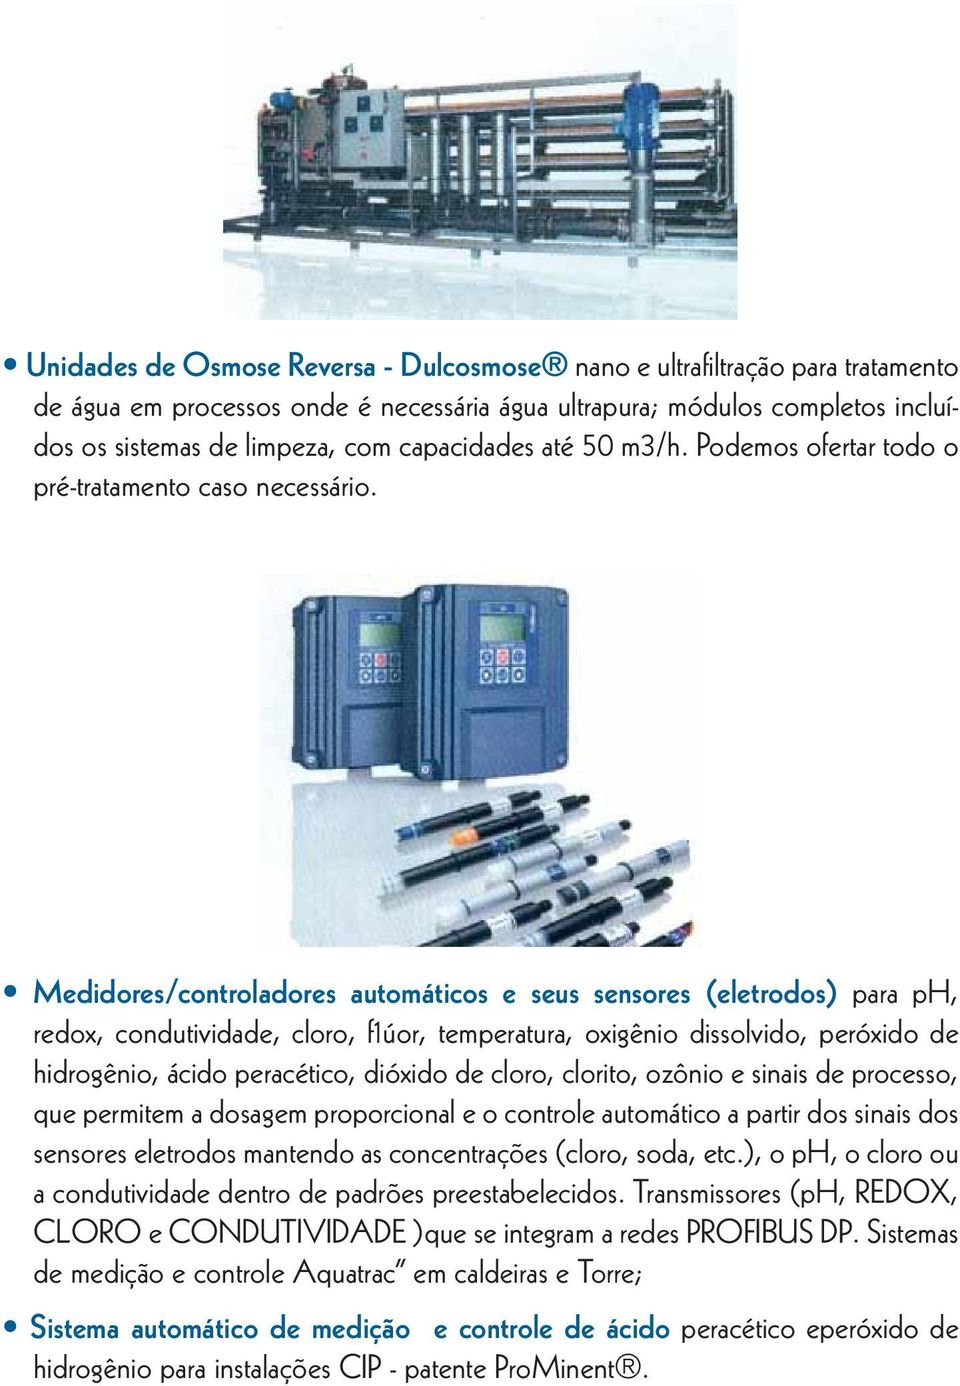 Medidores/controladores automáticos e seus sensores (eletrodos) para ph, redox, condutividade, cloro, f1úor, temperatura, oxigênio dissolvido, peróxido de hidrogênio, ácido peracético, dióxido de